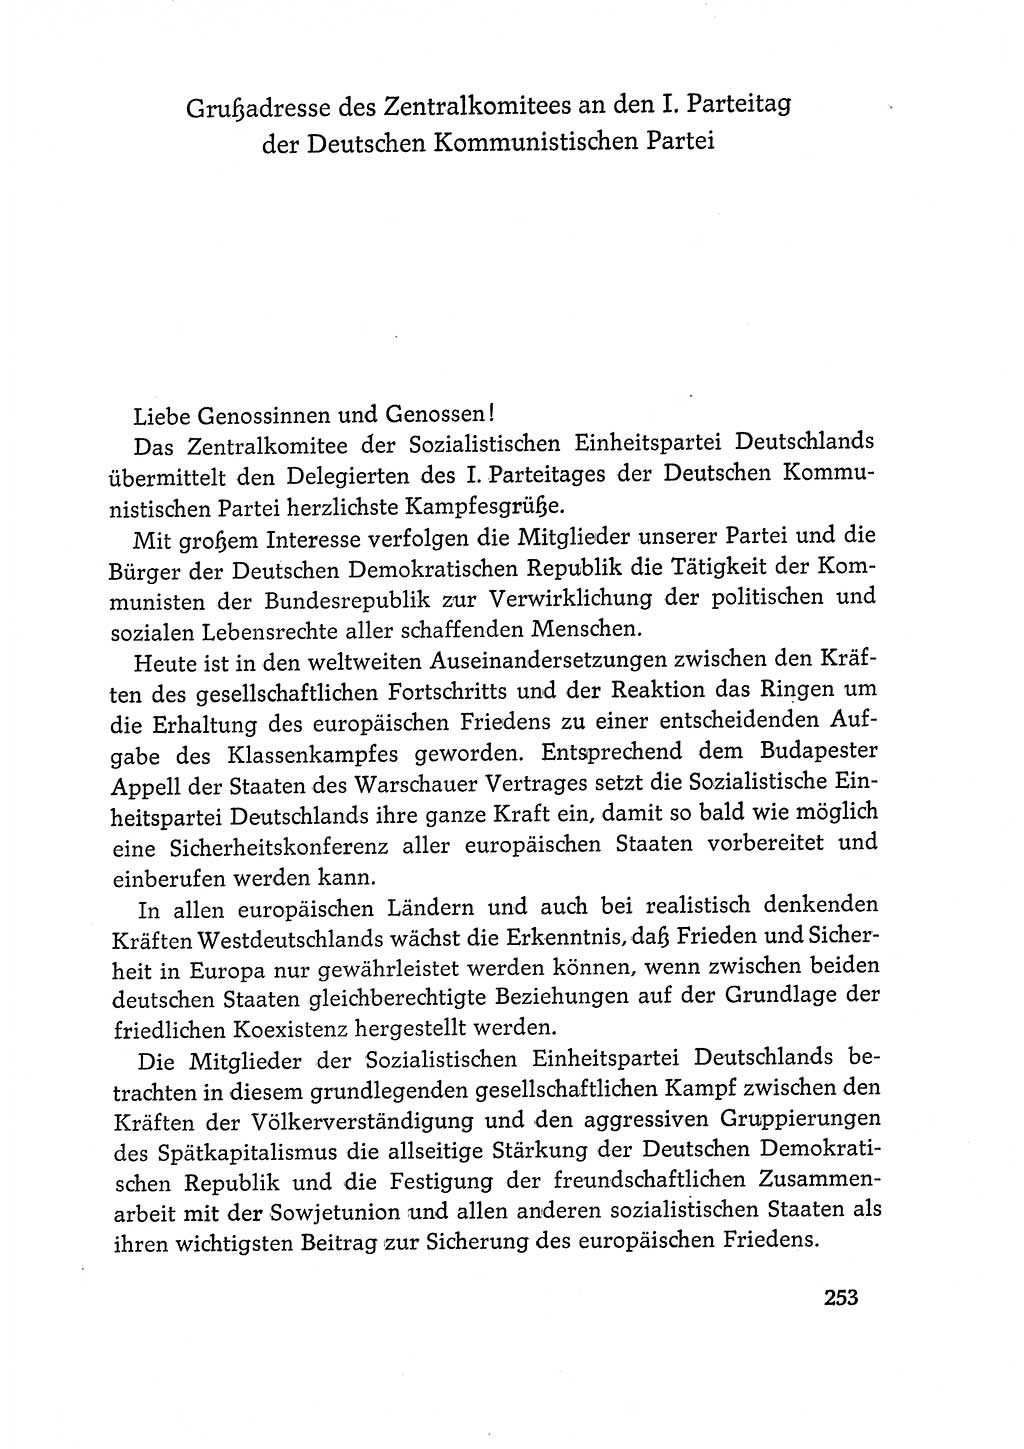 Dokumente der Sozialistischen Einheitspartei Deutschlands (SED) [Deutsche Demokratische Republik (DDR)] 1968-1969, Seite 253 (Dok. SED DDR 1968-1969, S. 253)